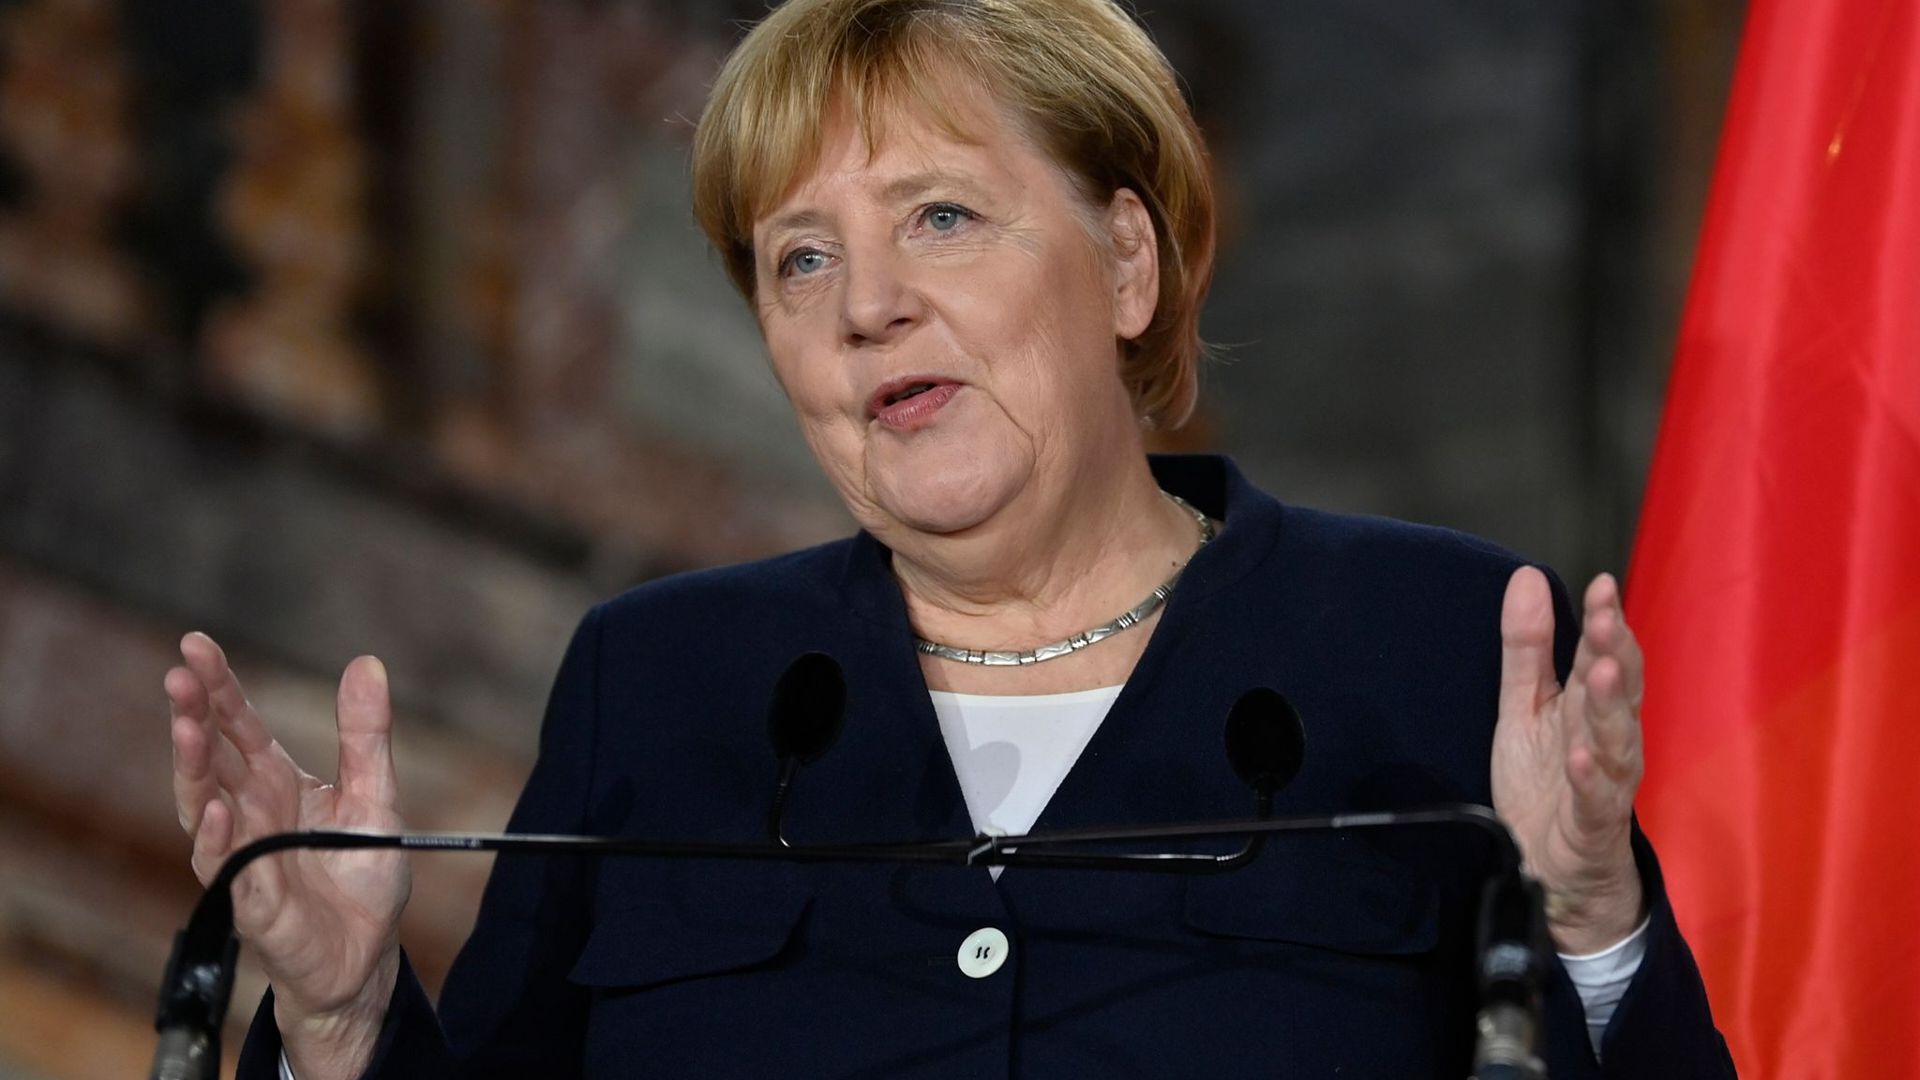 Bundeskanzlerin Angela Merkel (CDU) spricht nach einem diplomatischen Treffen auf einer Pressekonferenz mit dem belgischen Premierminister De Croo.